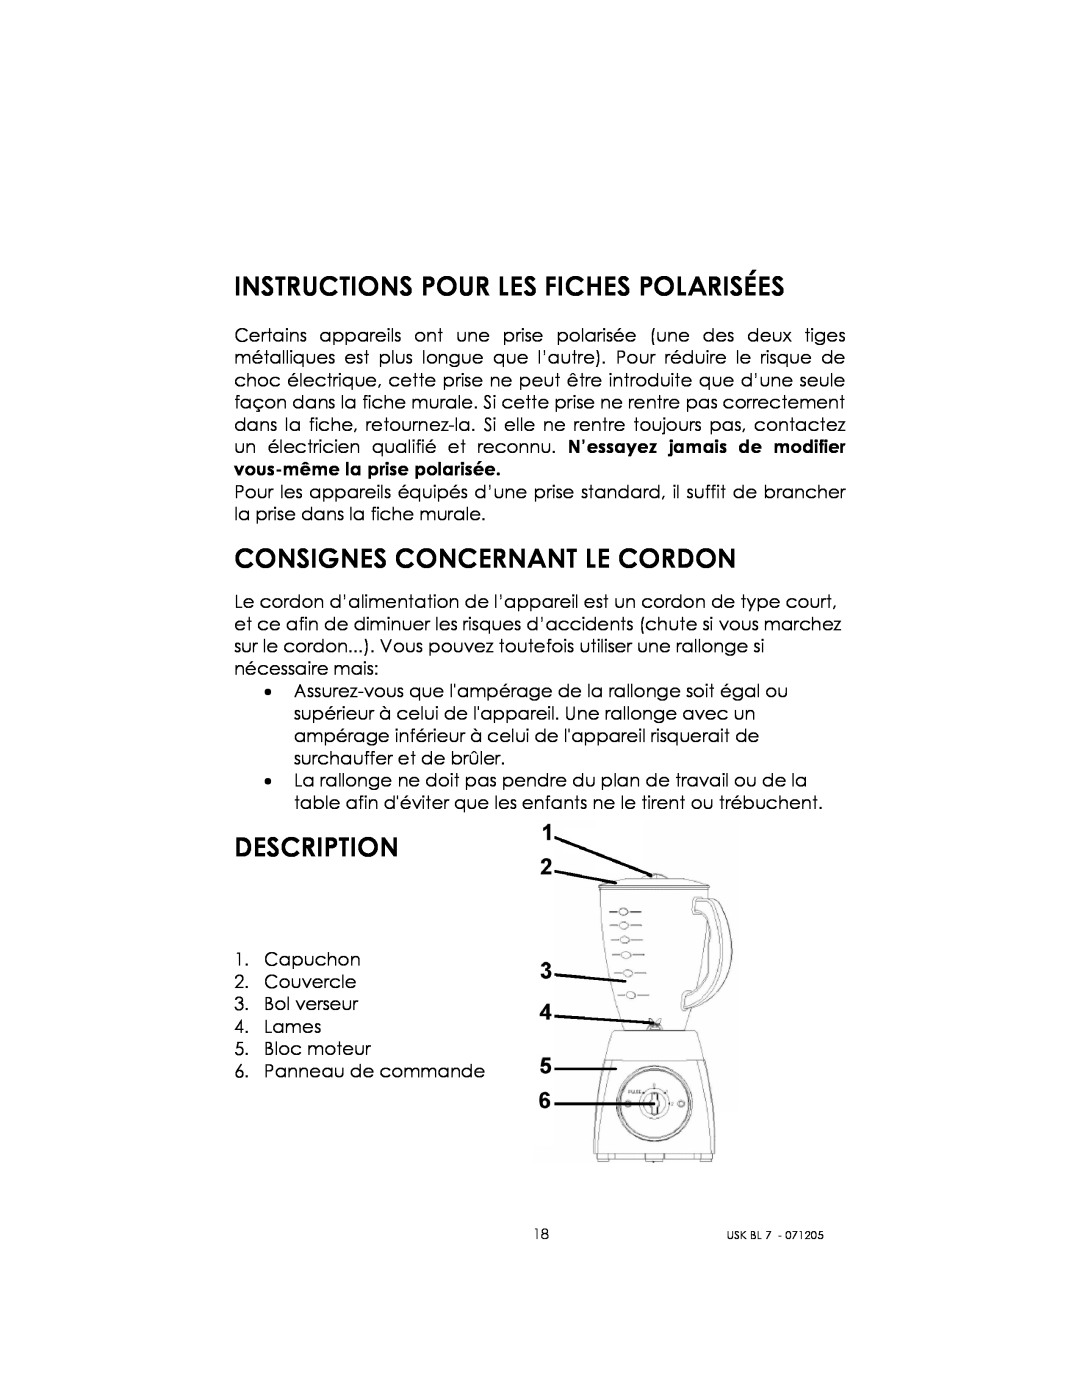 Kalorik USK BL 7 manual Instructions Pour Les Fiches Polarisées, Consignes Concernant Le Cordon, Description 